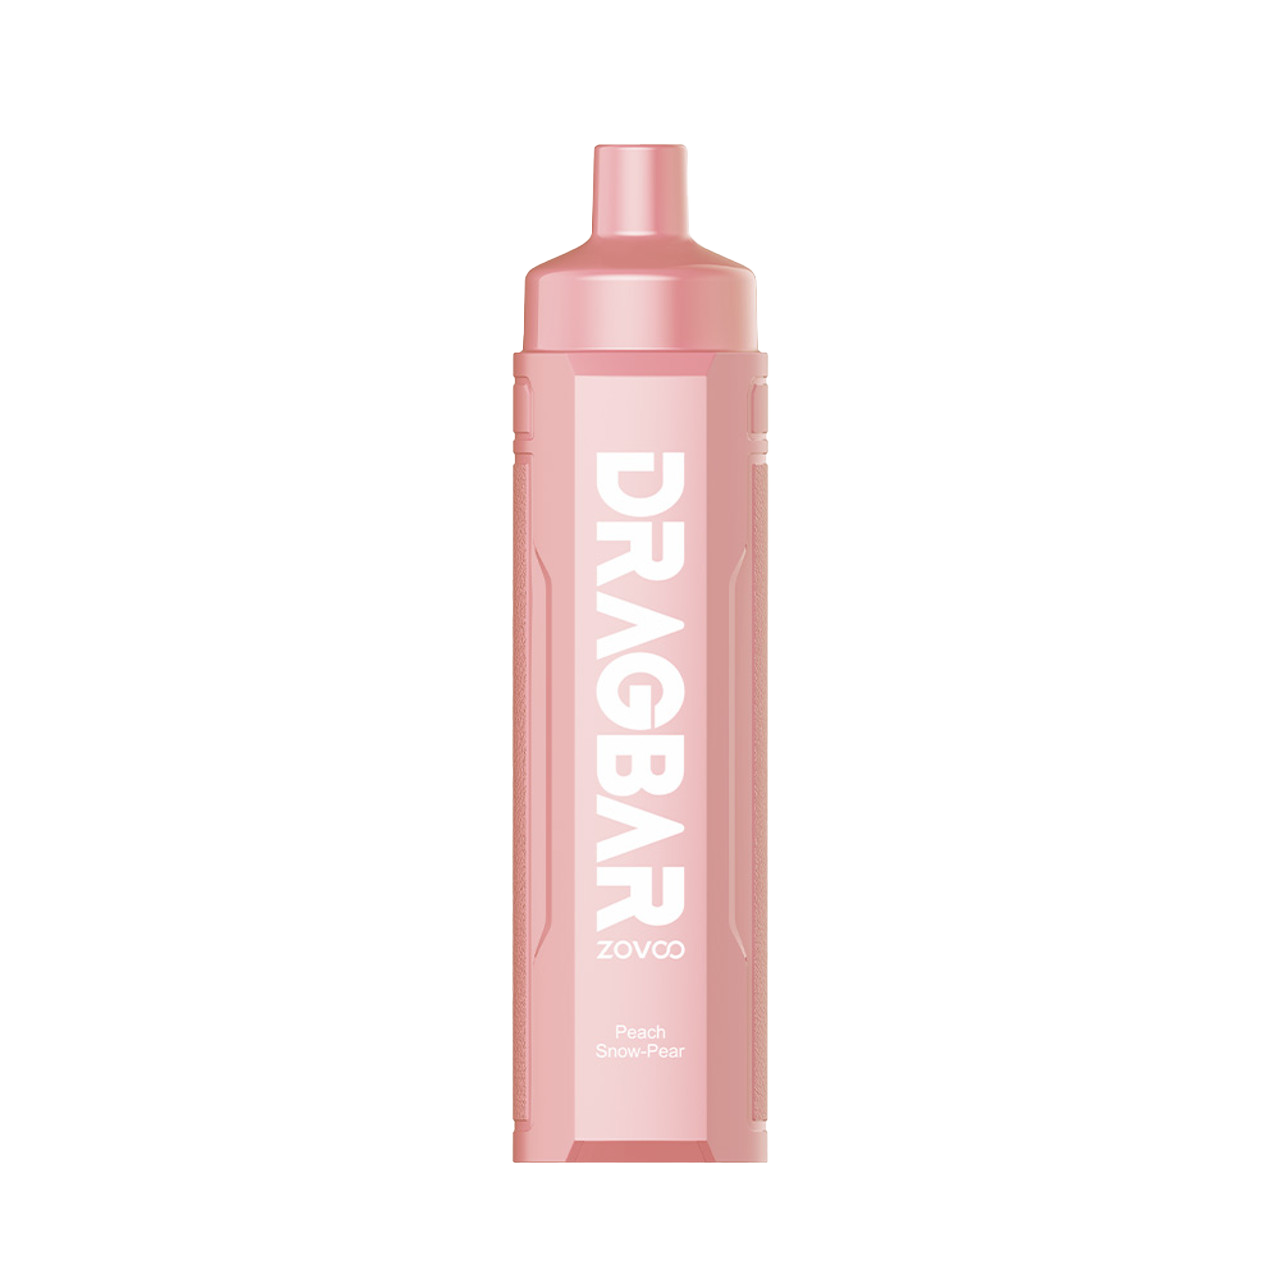 ZoVoo DragBar R6000 Disposable *3MG* Peach Snow Pear